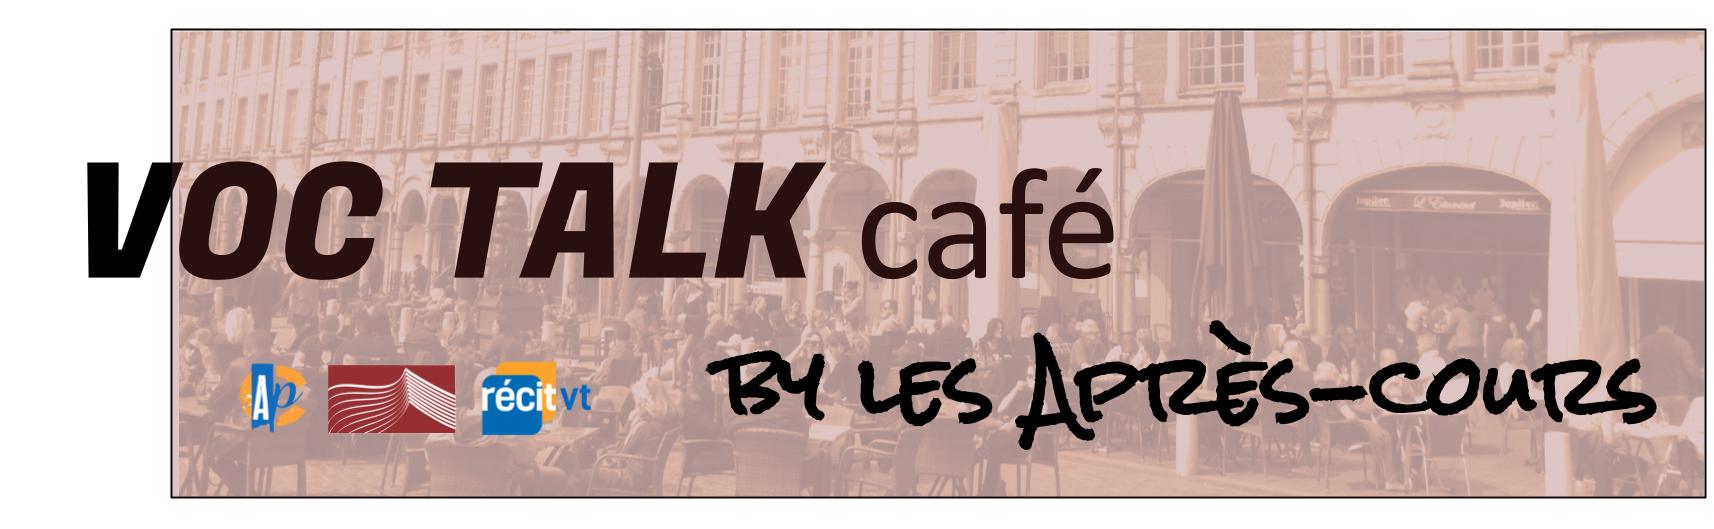 Voc Talk café by Après-cours